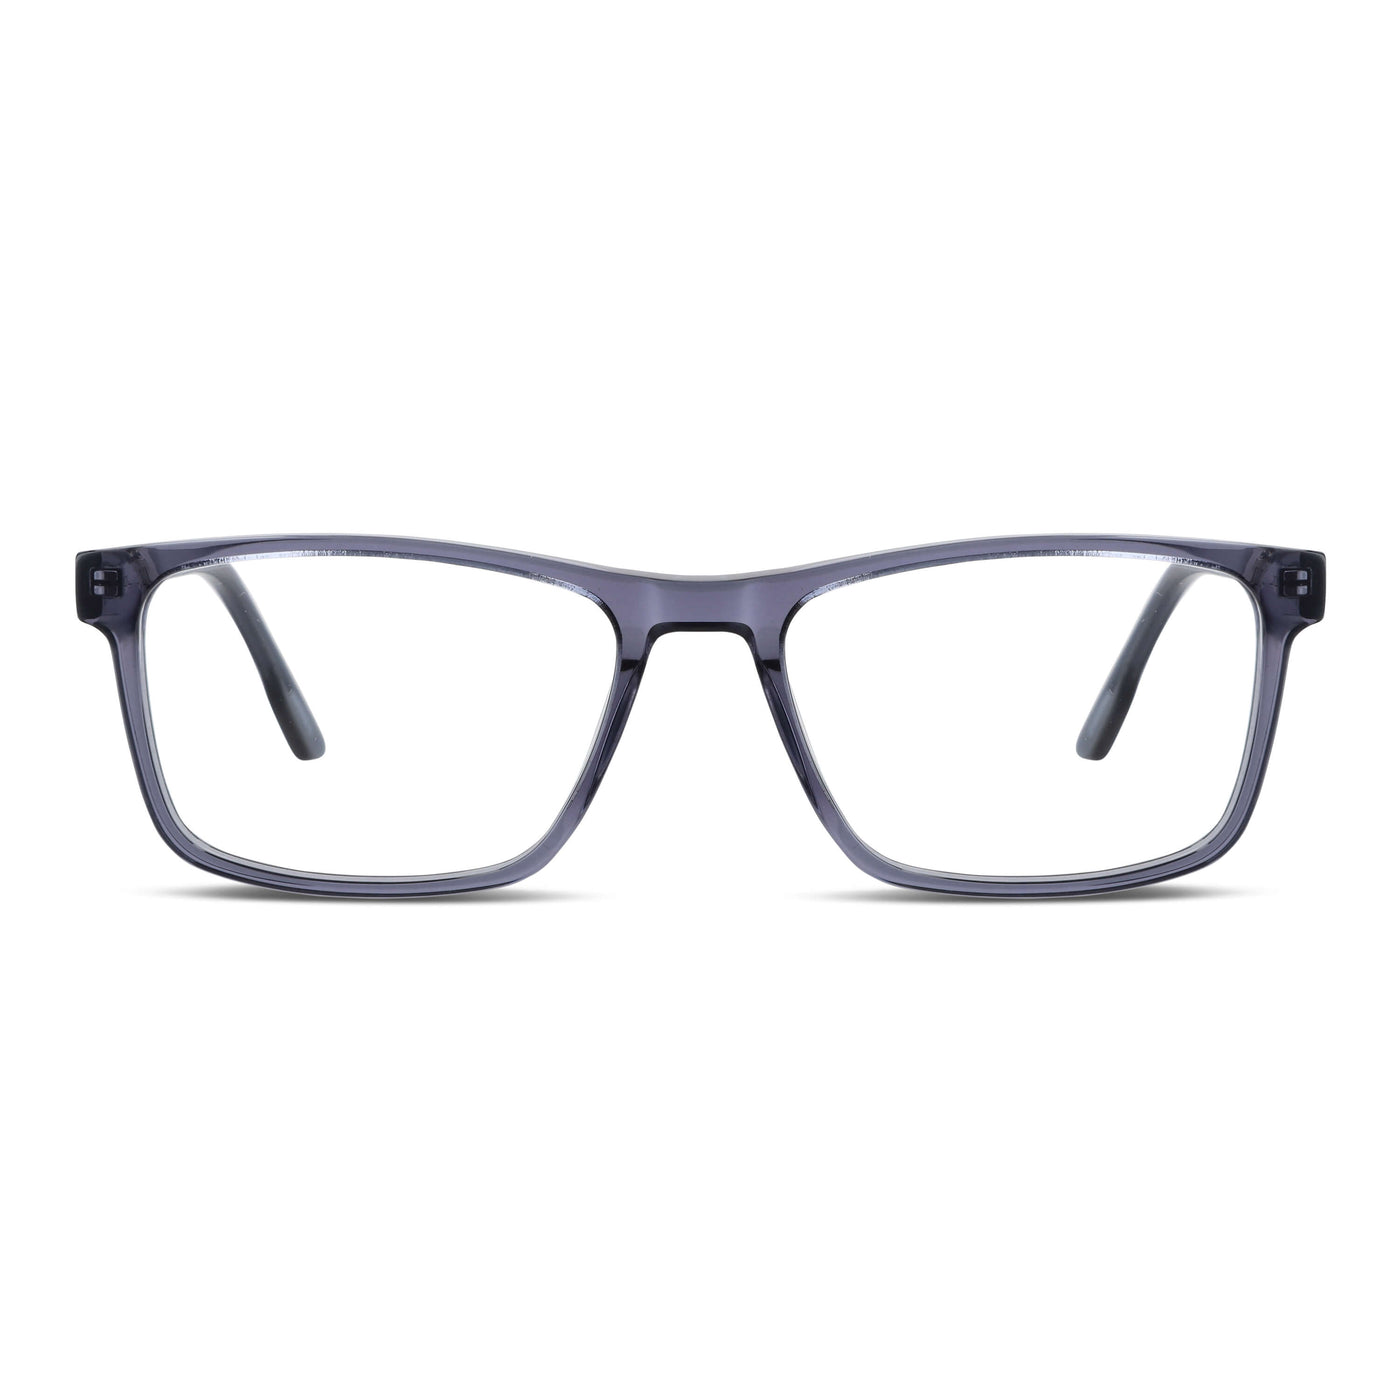  marcos lentes opticos receta multifocal bifocal adelgazado filtro azul rectangular cara redonda grande hombre mujer.jpg